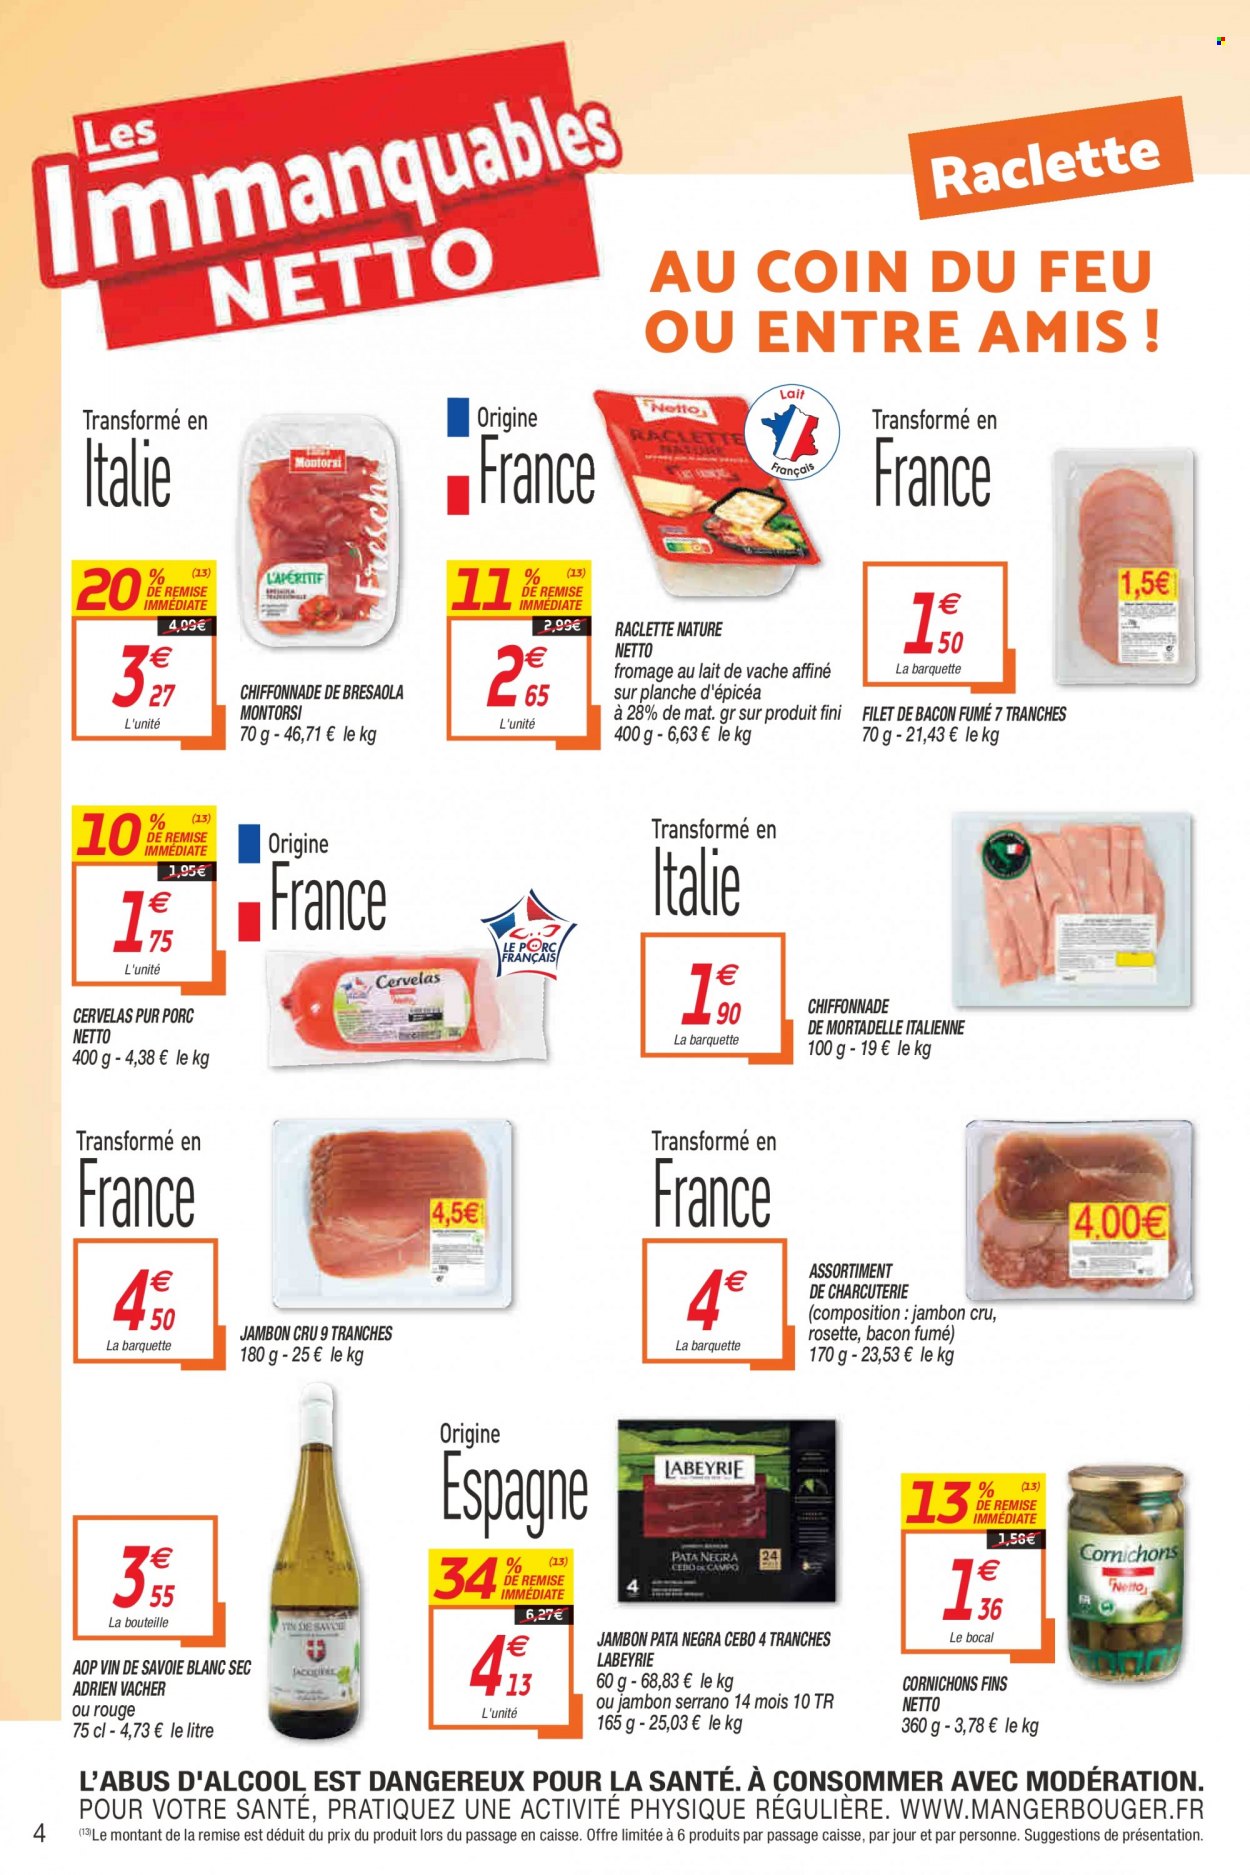 thumbnail - Catalogue Netto - 23/11/2021 - 28/11/2021 - Produits soldés - Labeyrie, filet de bacon, bresaola, jambon sec, rosette, mortadella, bacon, cervelas, La Raclette, cornichons, vin. Page 4.